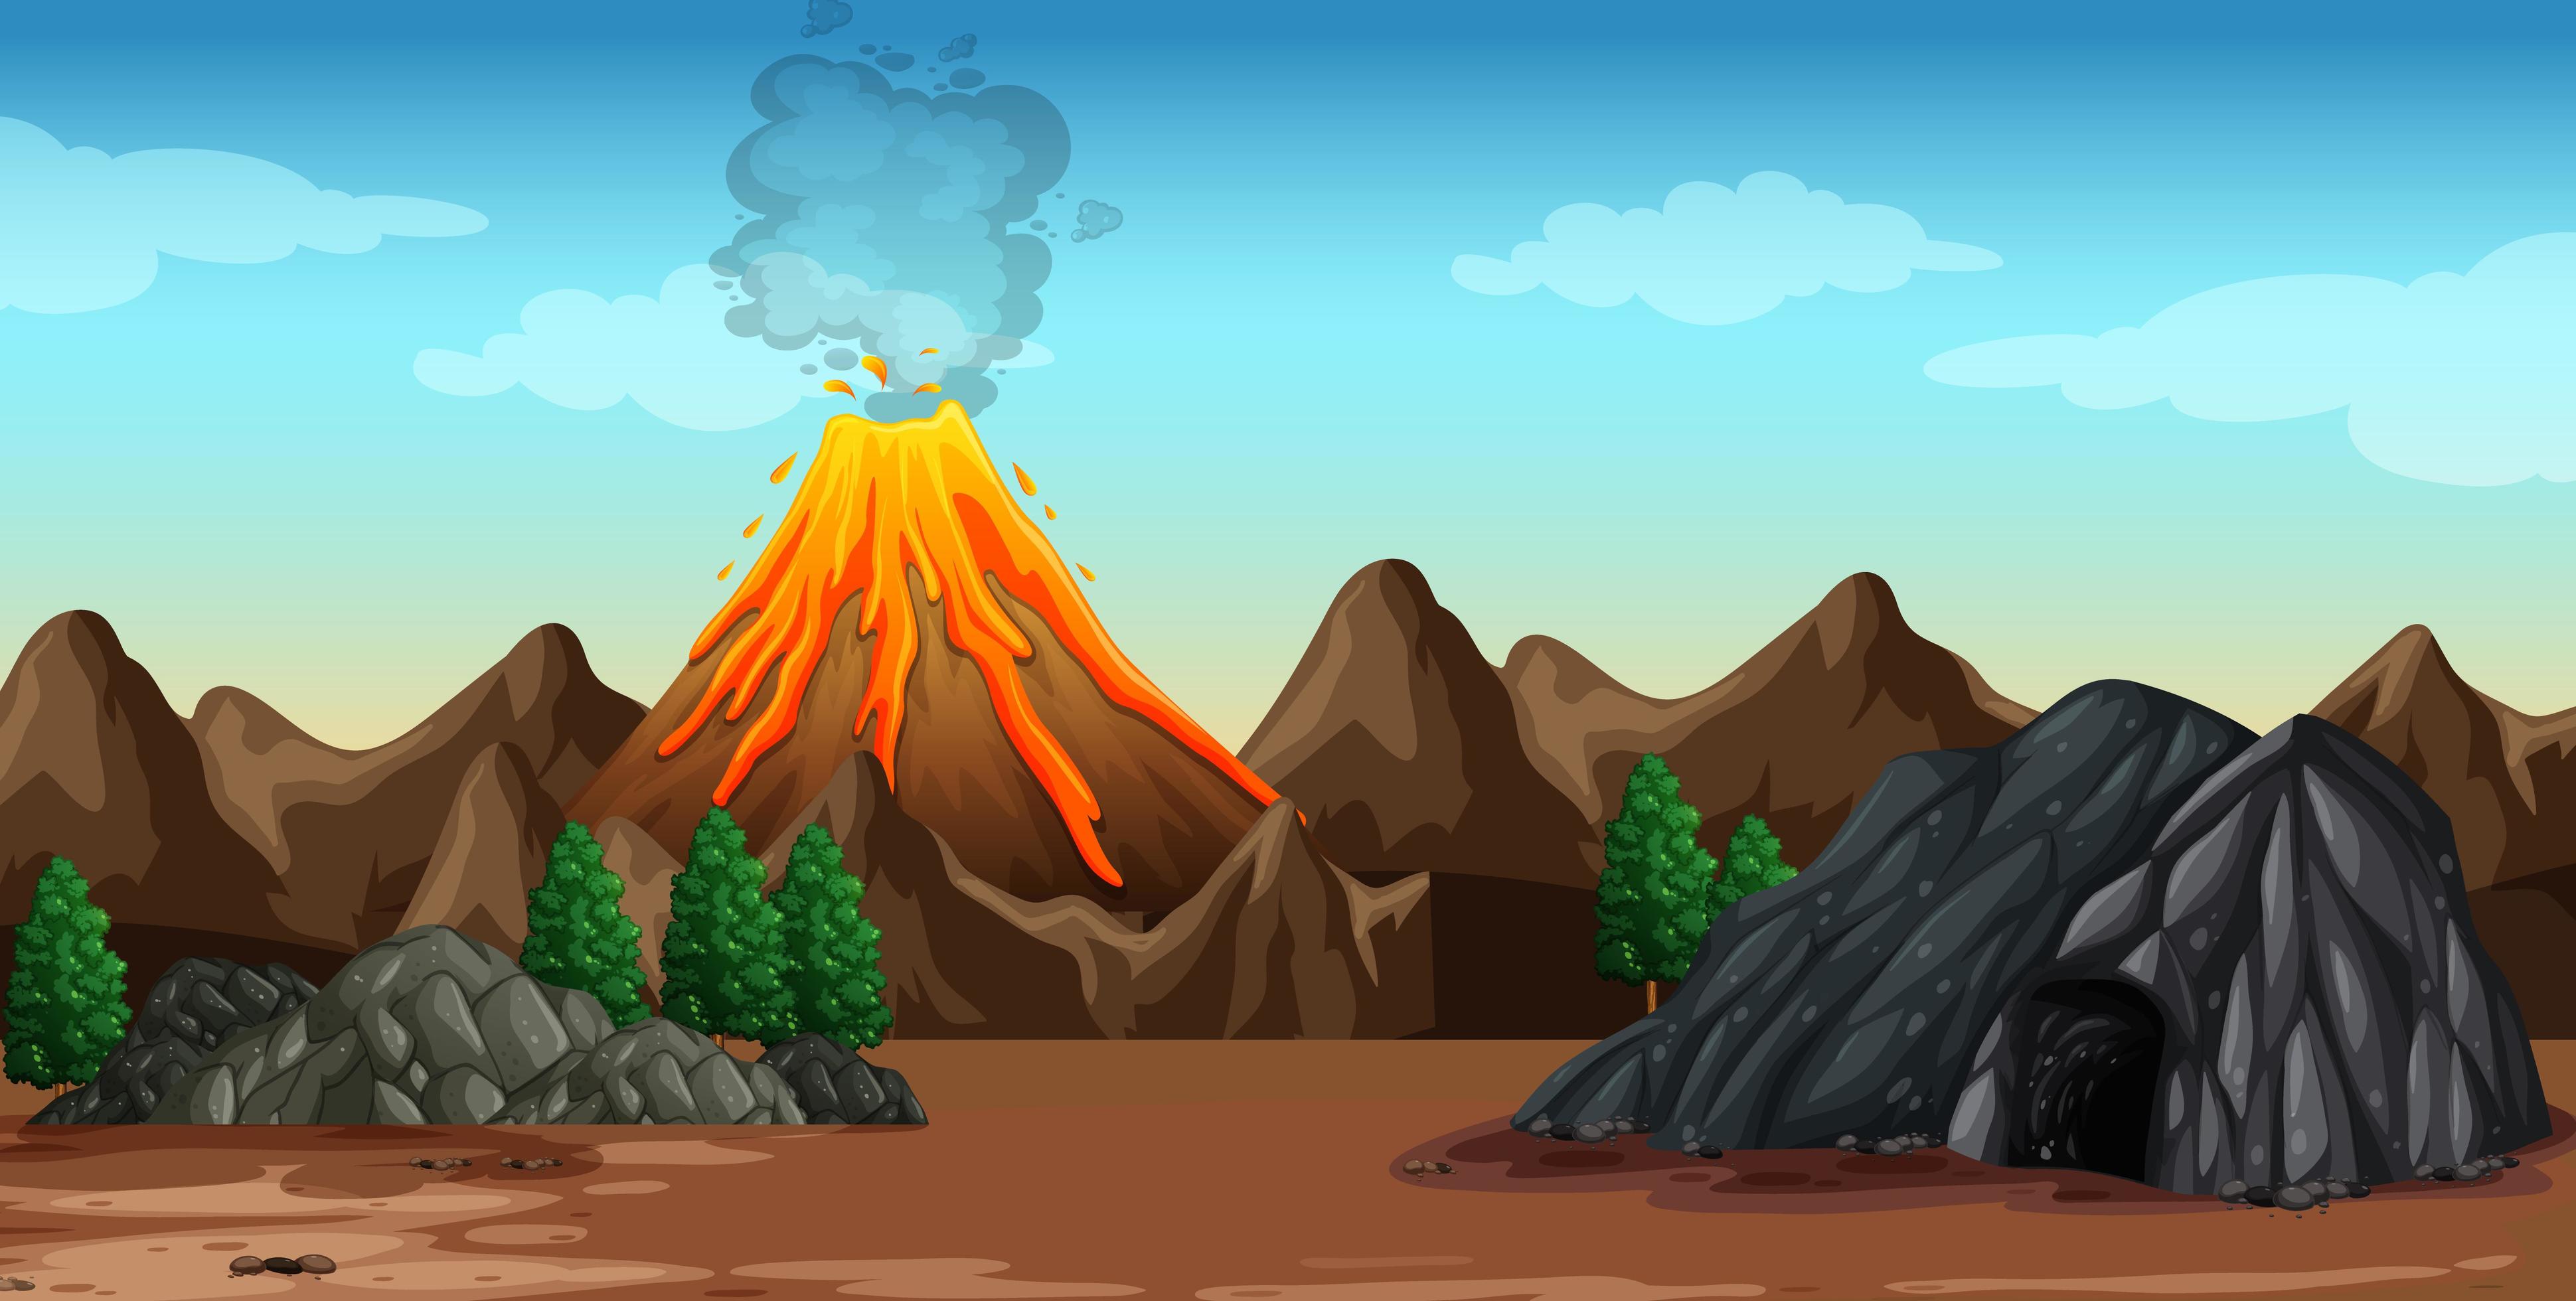 Volcano eruption in nature scene 1845048 Vector Art at Vecteezy